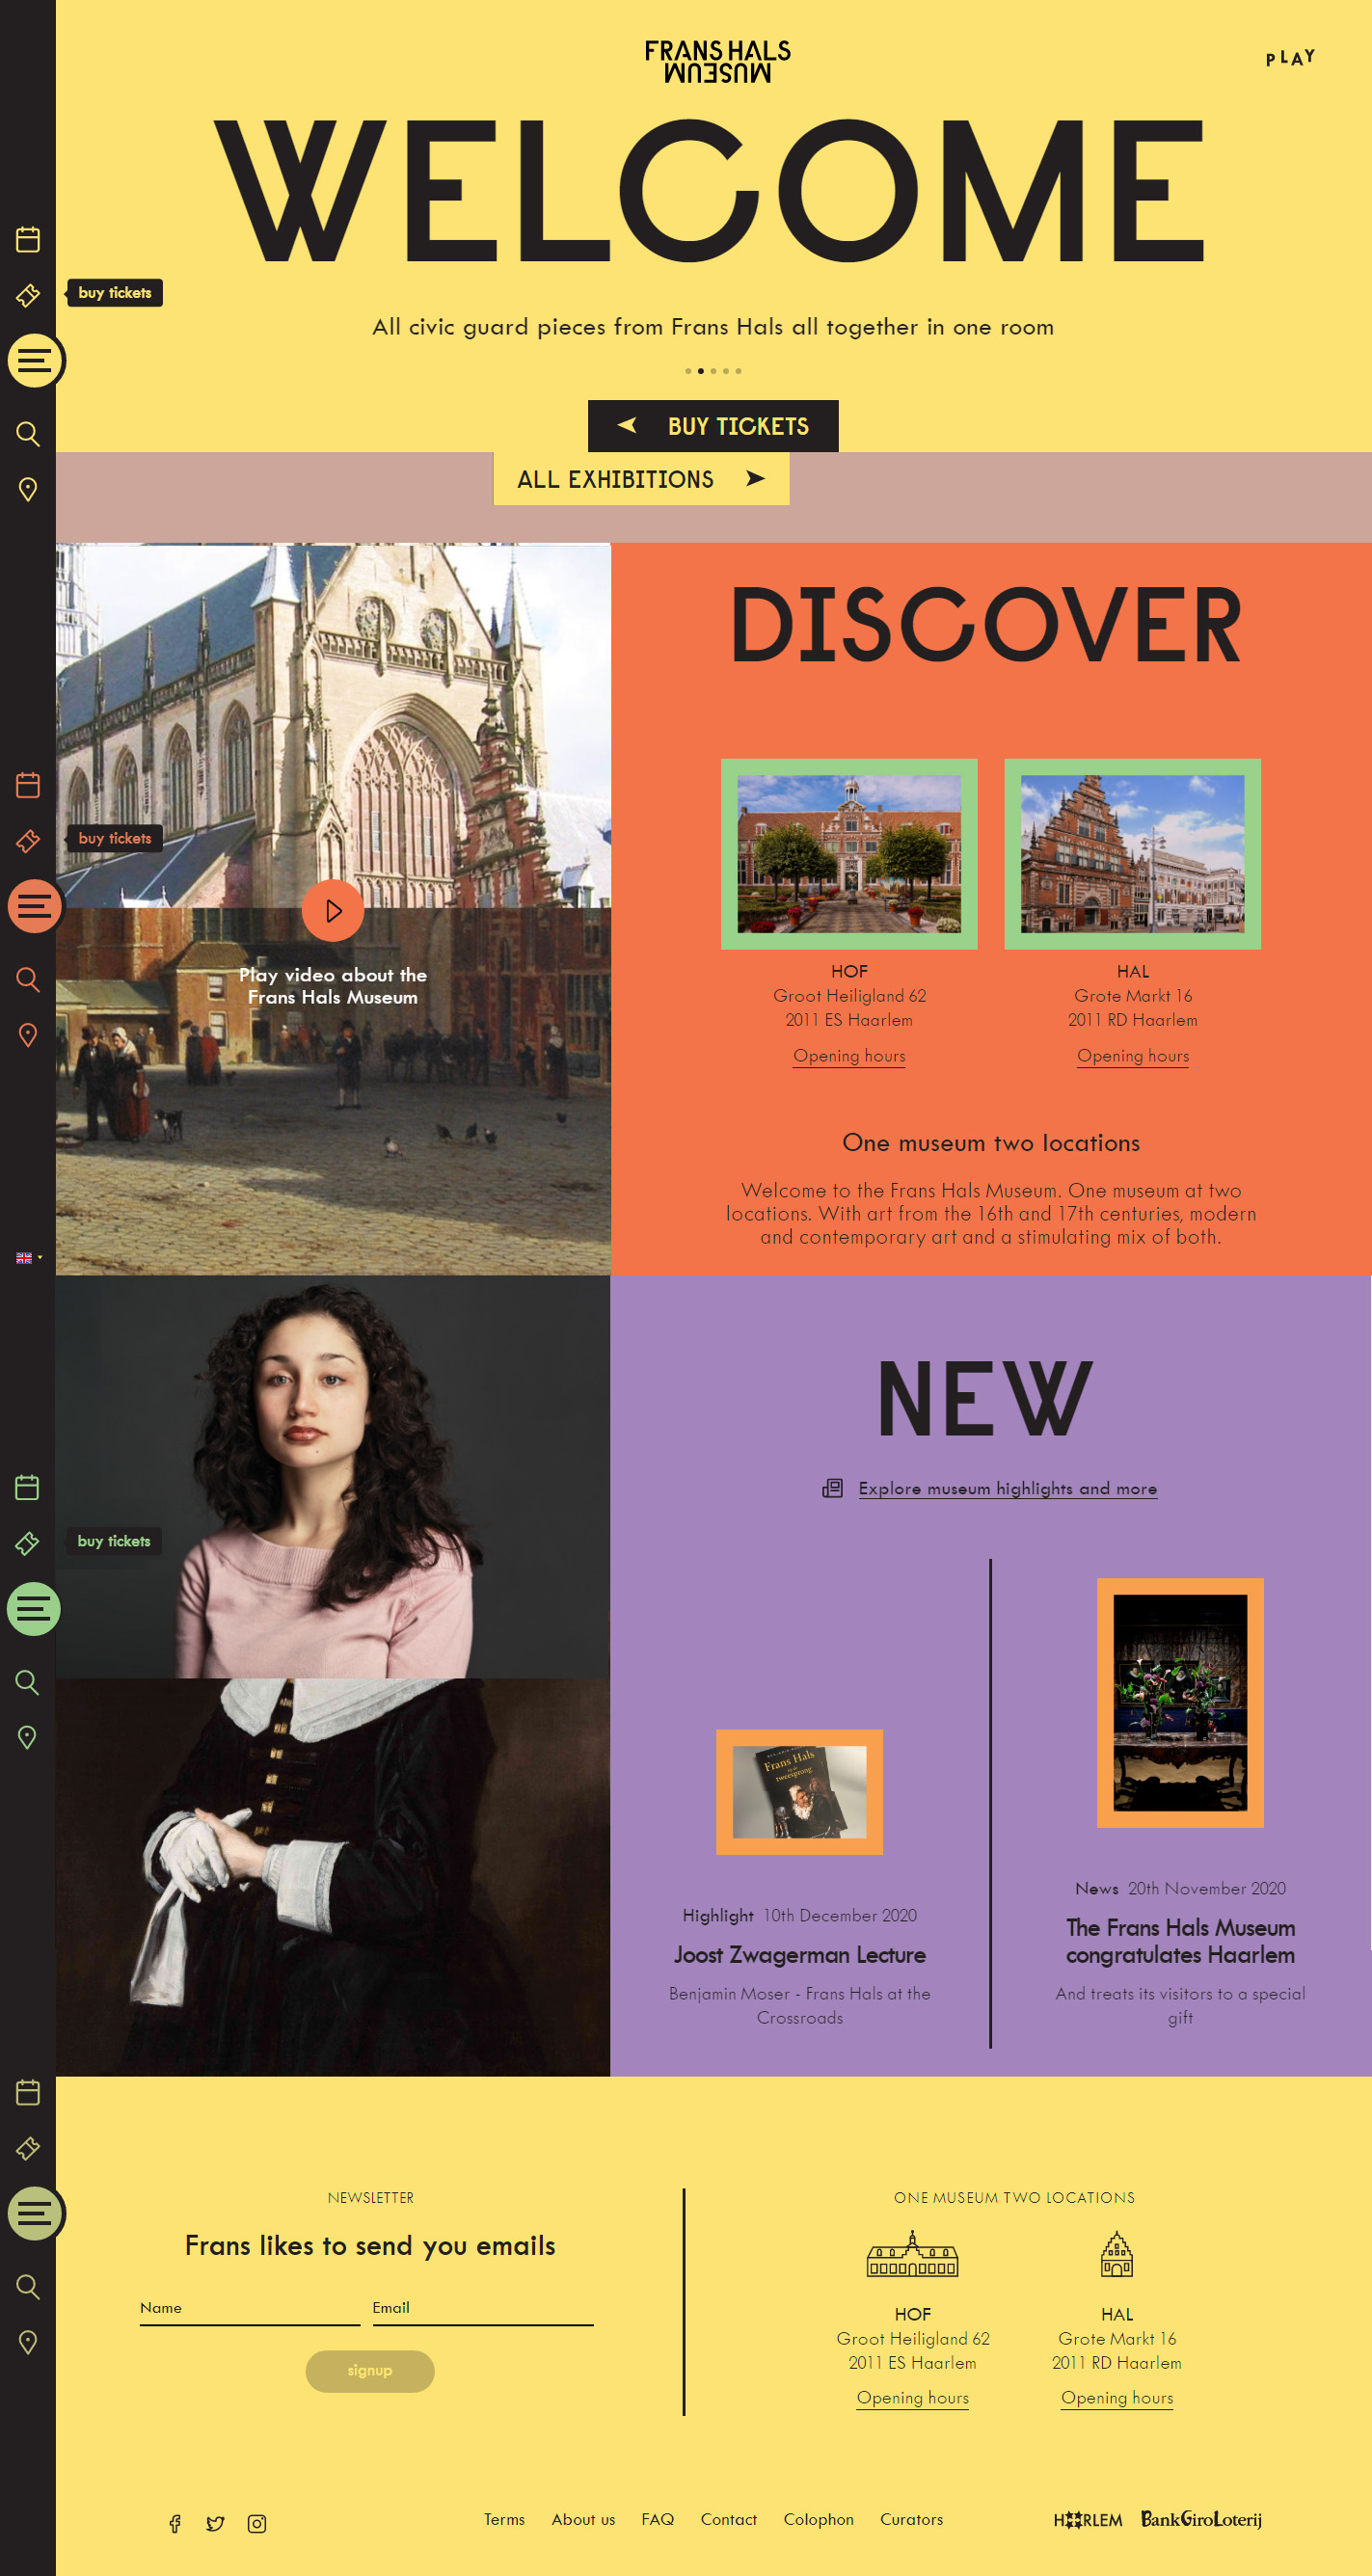 Frans Hals博物馆网站设计